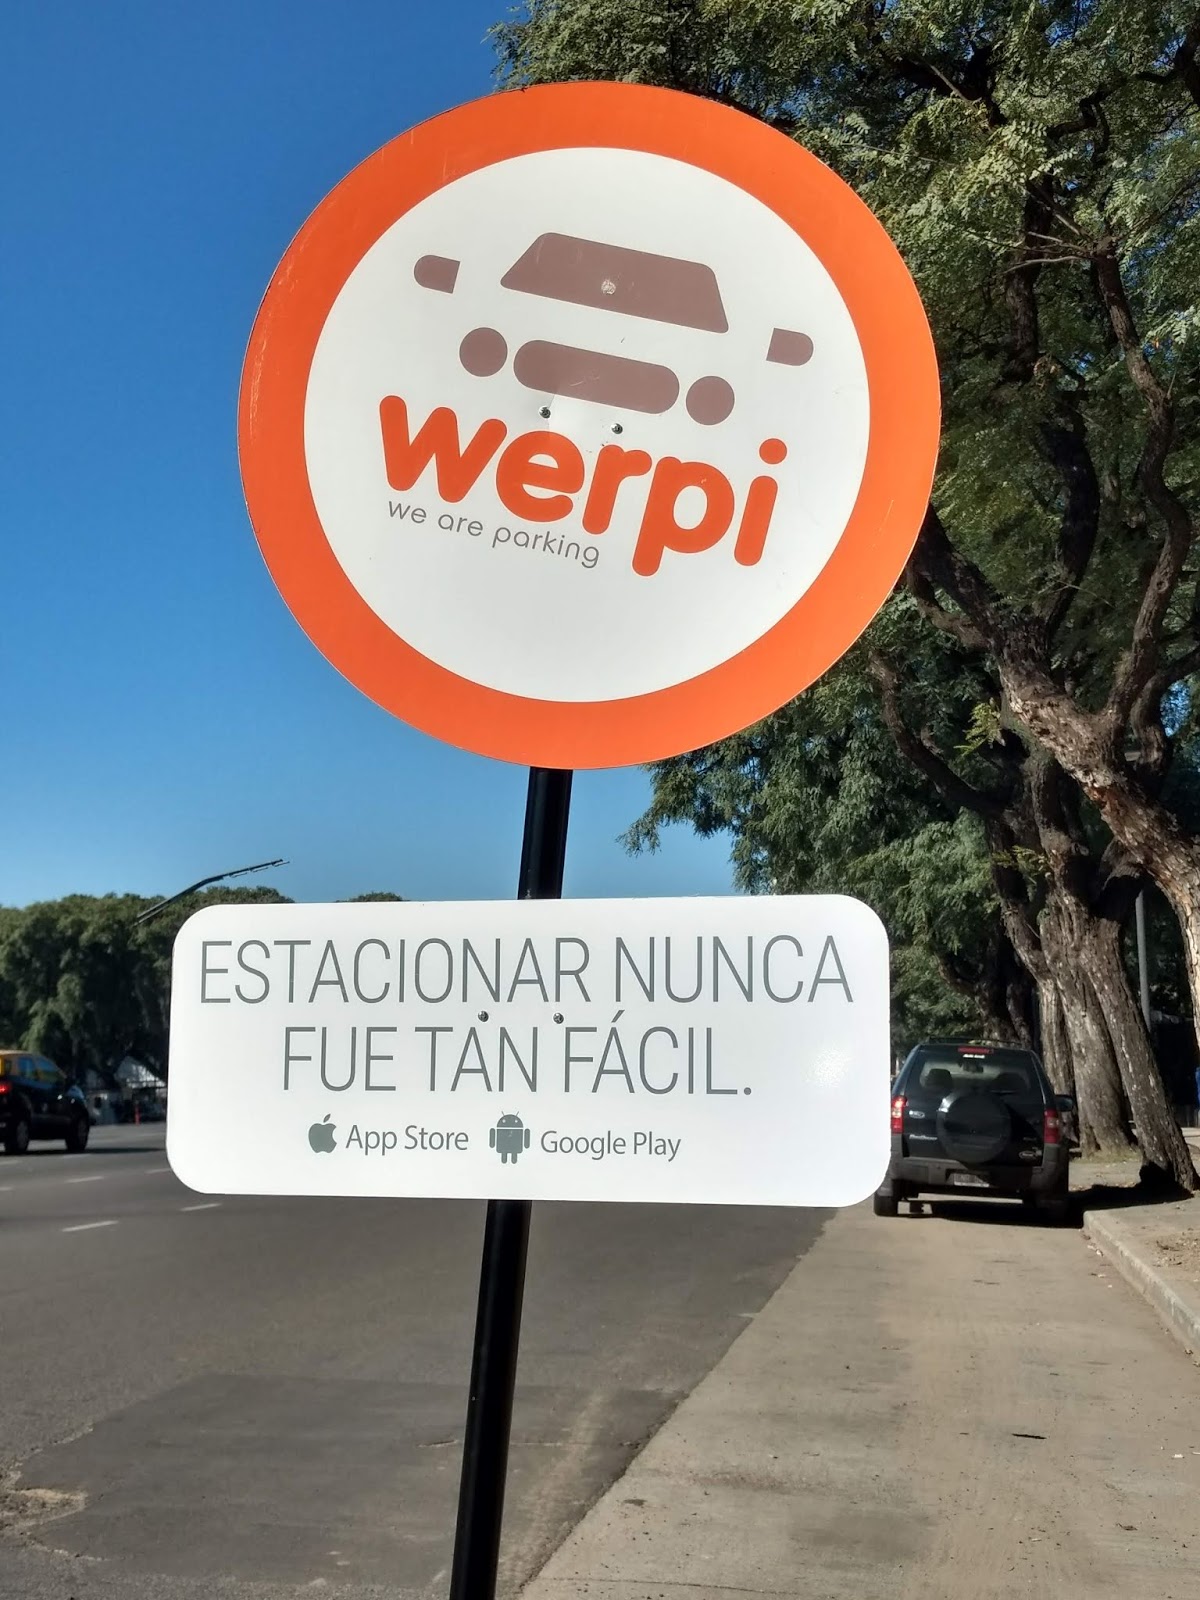 FEDERICO SANCHEZ – CEO DE WERPI (Una aplicación que te ayuda a encontrar estacionamiento)